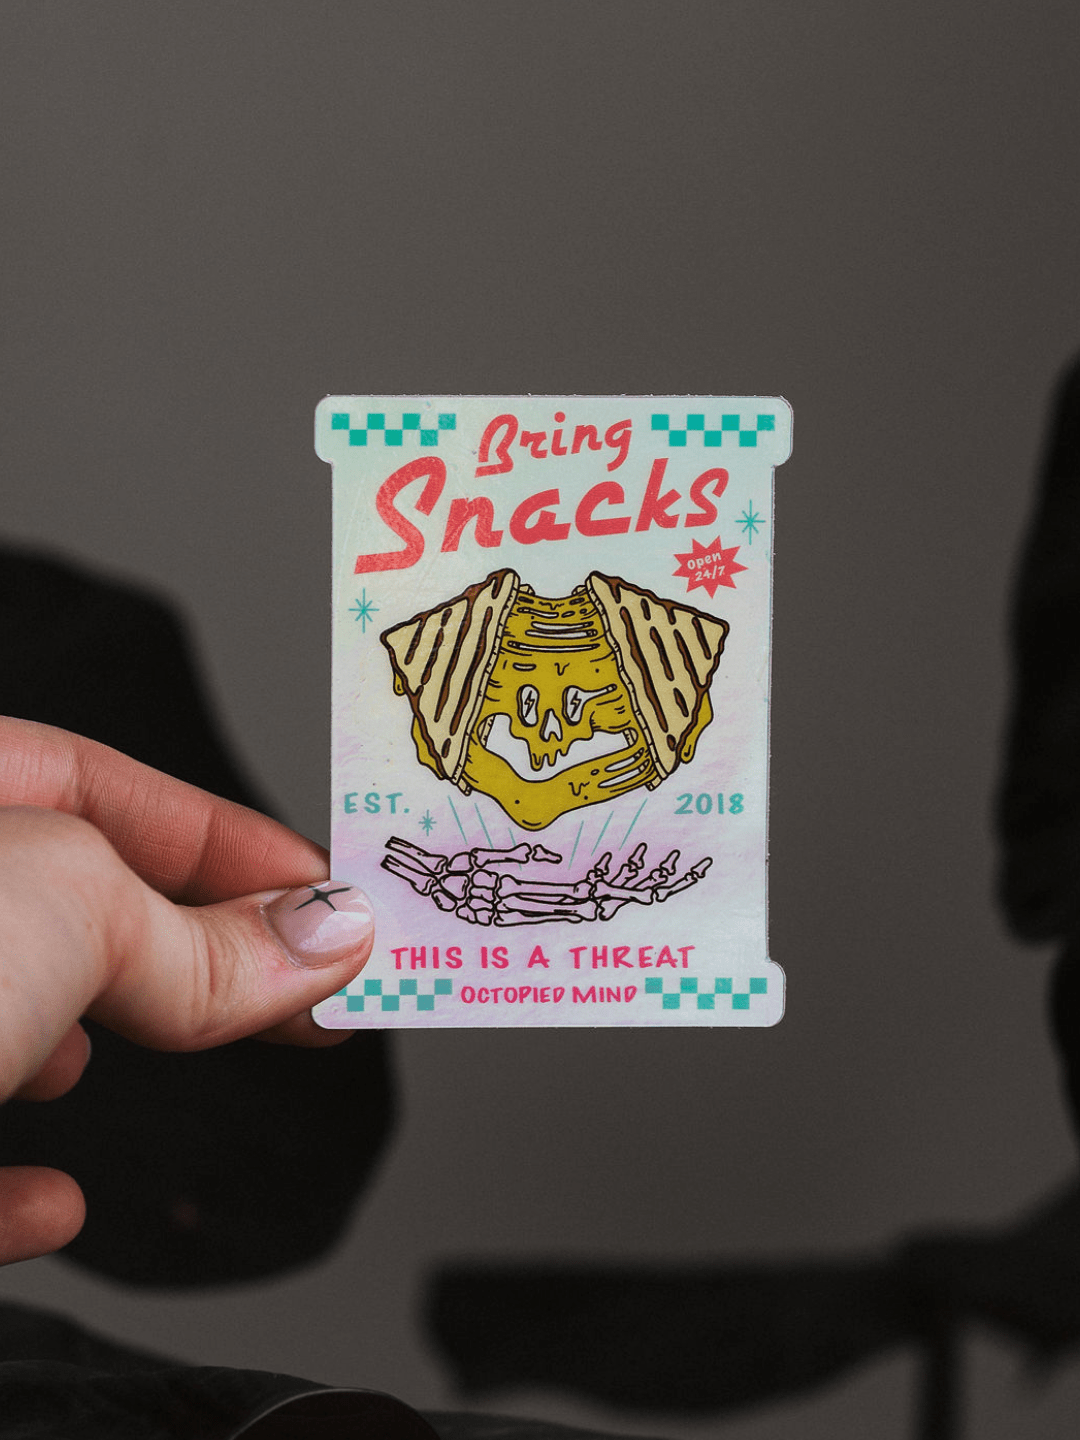 Bring Snacks Sticker - Octopied Mind